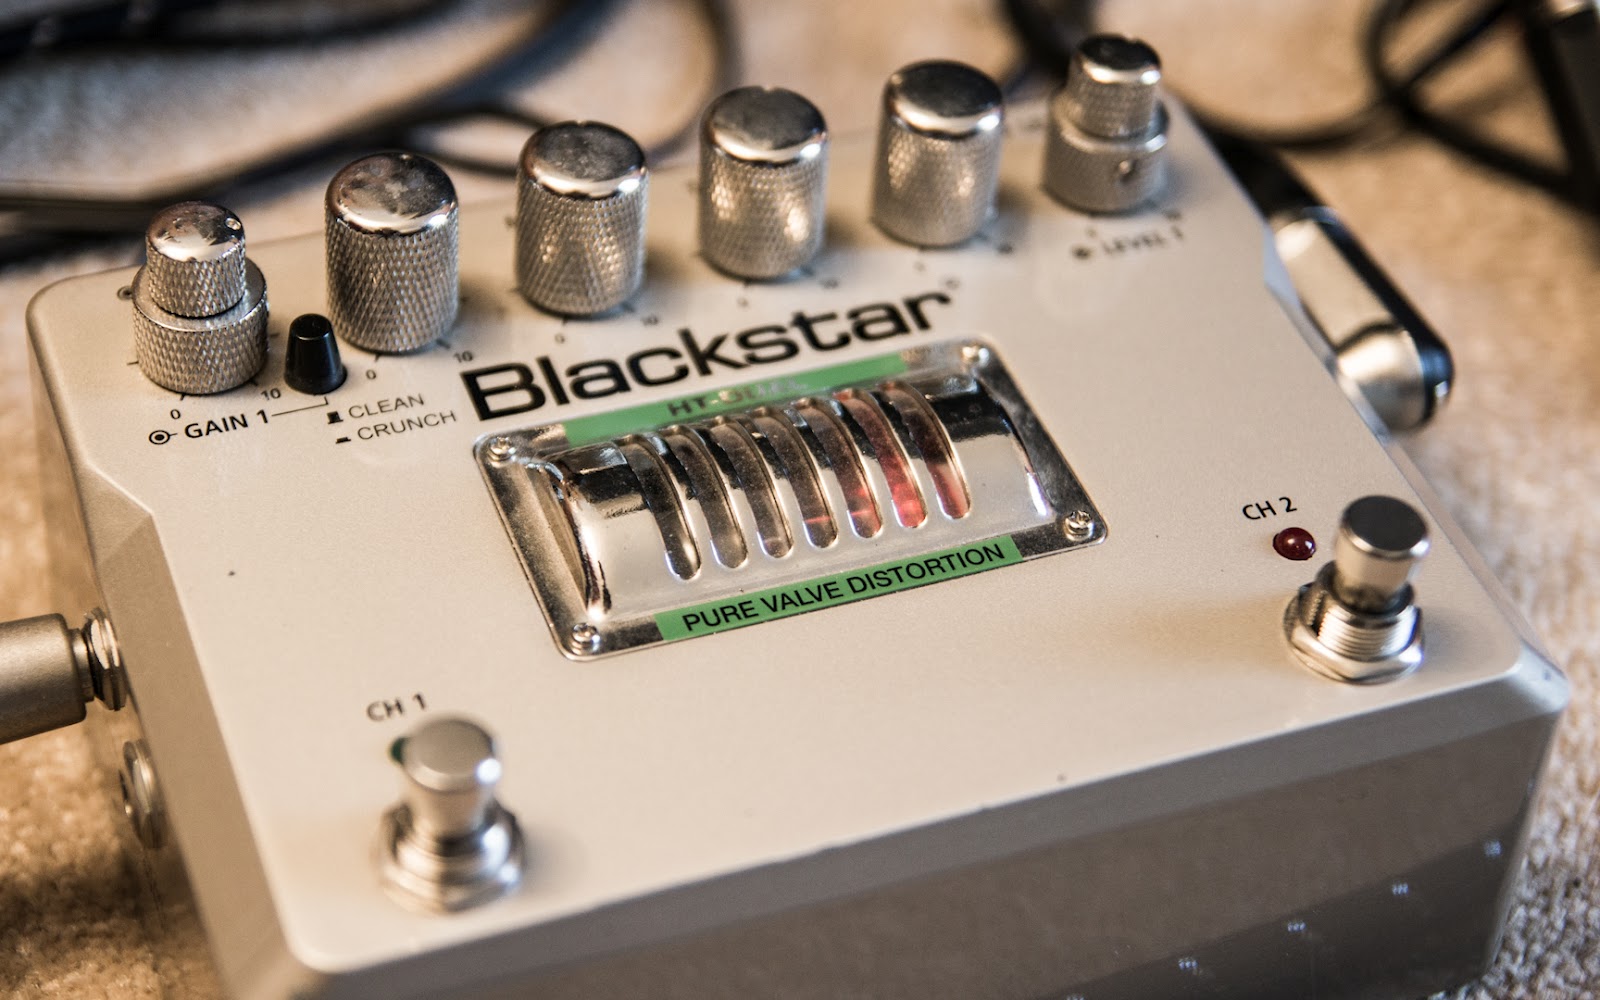 door elkaar haspelen hulp in de huishouding krekel SOUND > VIDEO: Gear Review: Blackstar HT Dual "Pure Valve Distortion" pedal